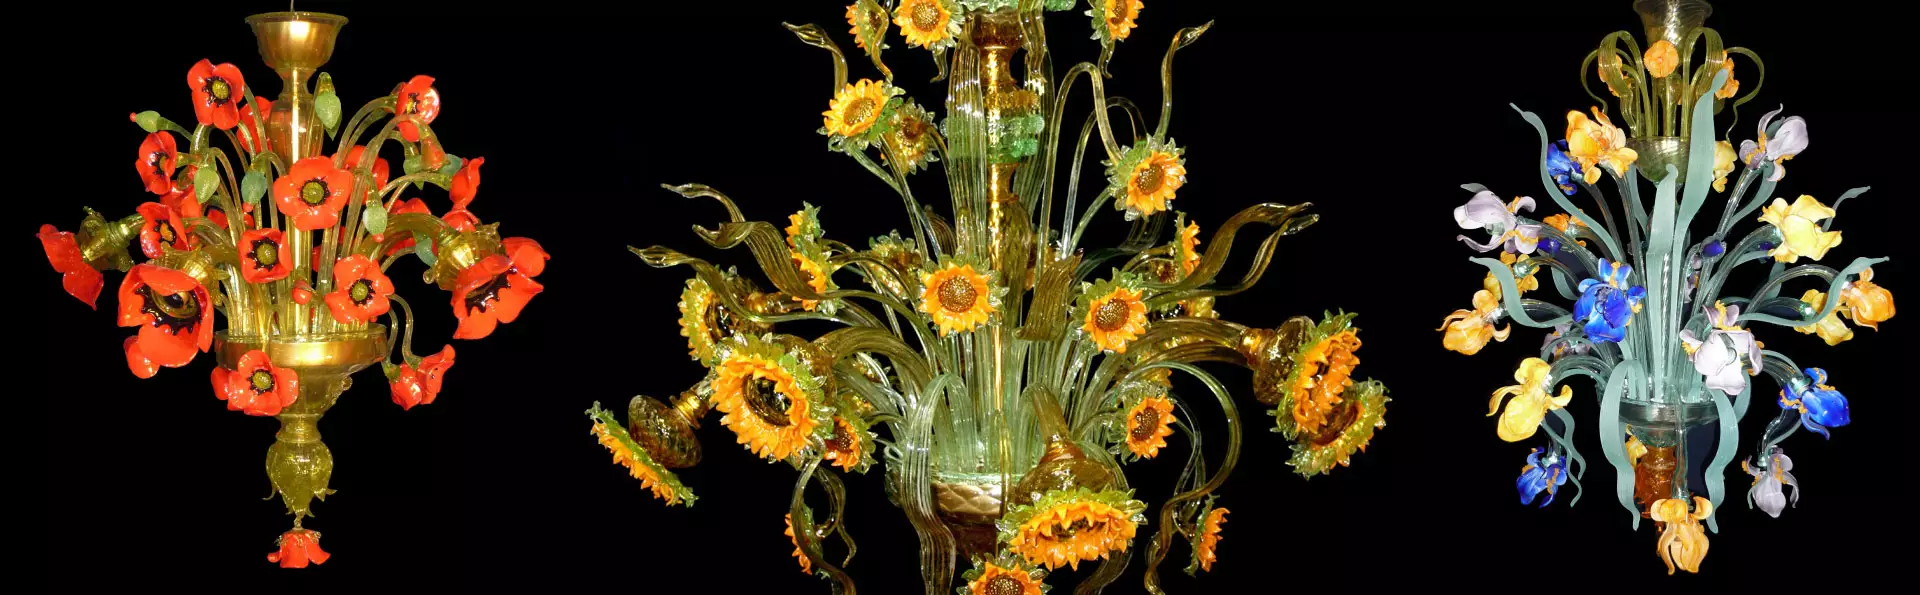 Kronleuchter aus Blumenglas